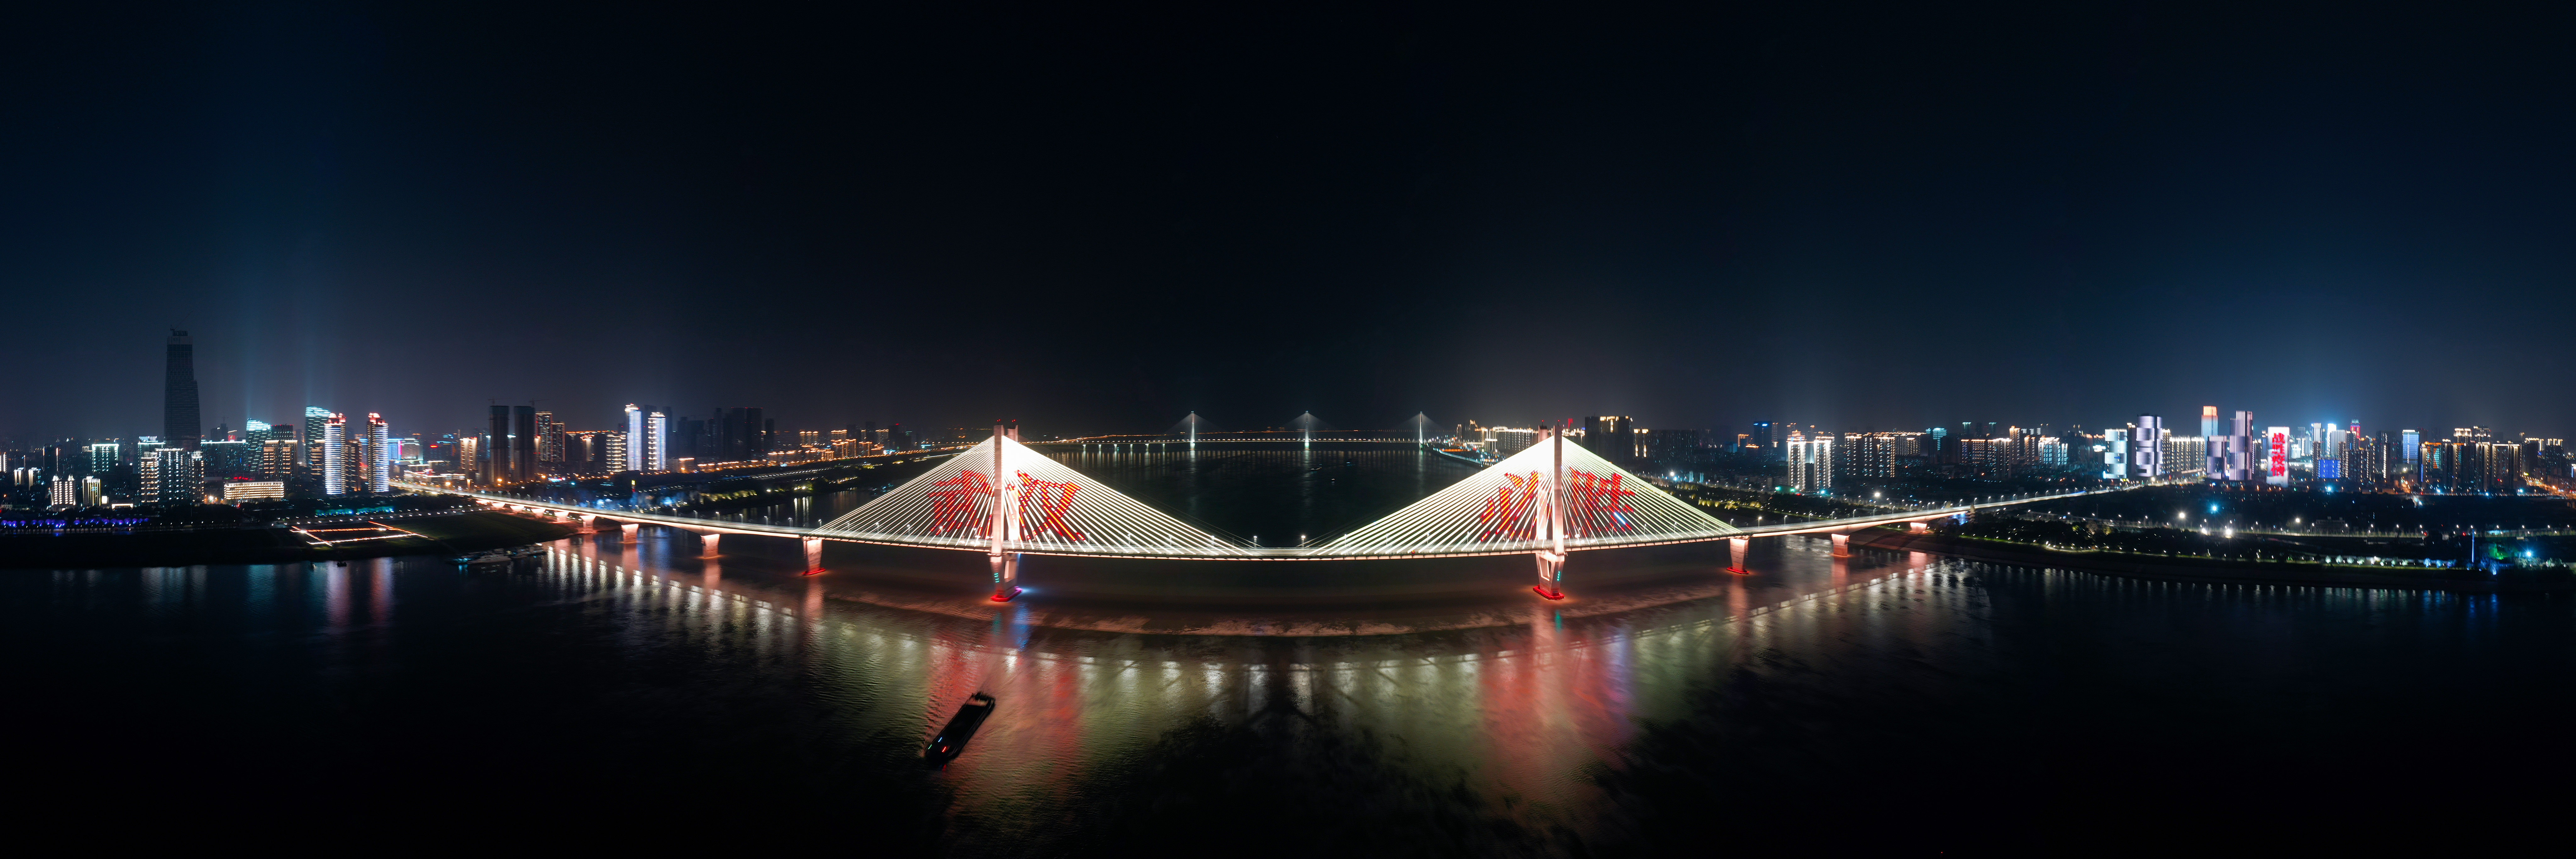 武汉二桥夜景图片